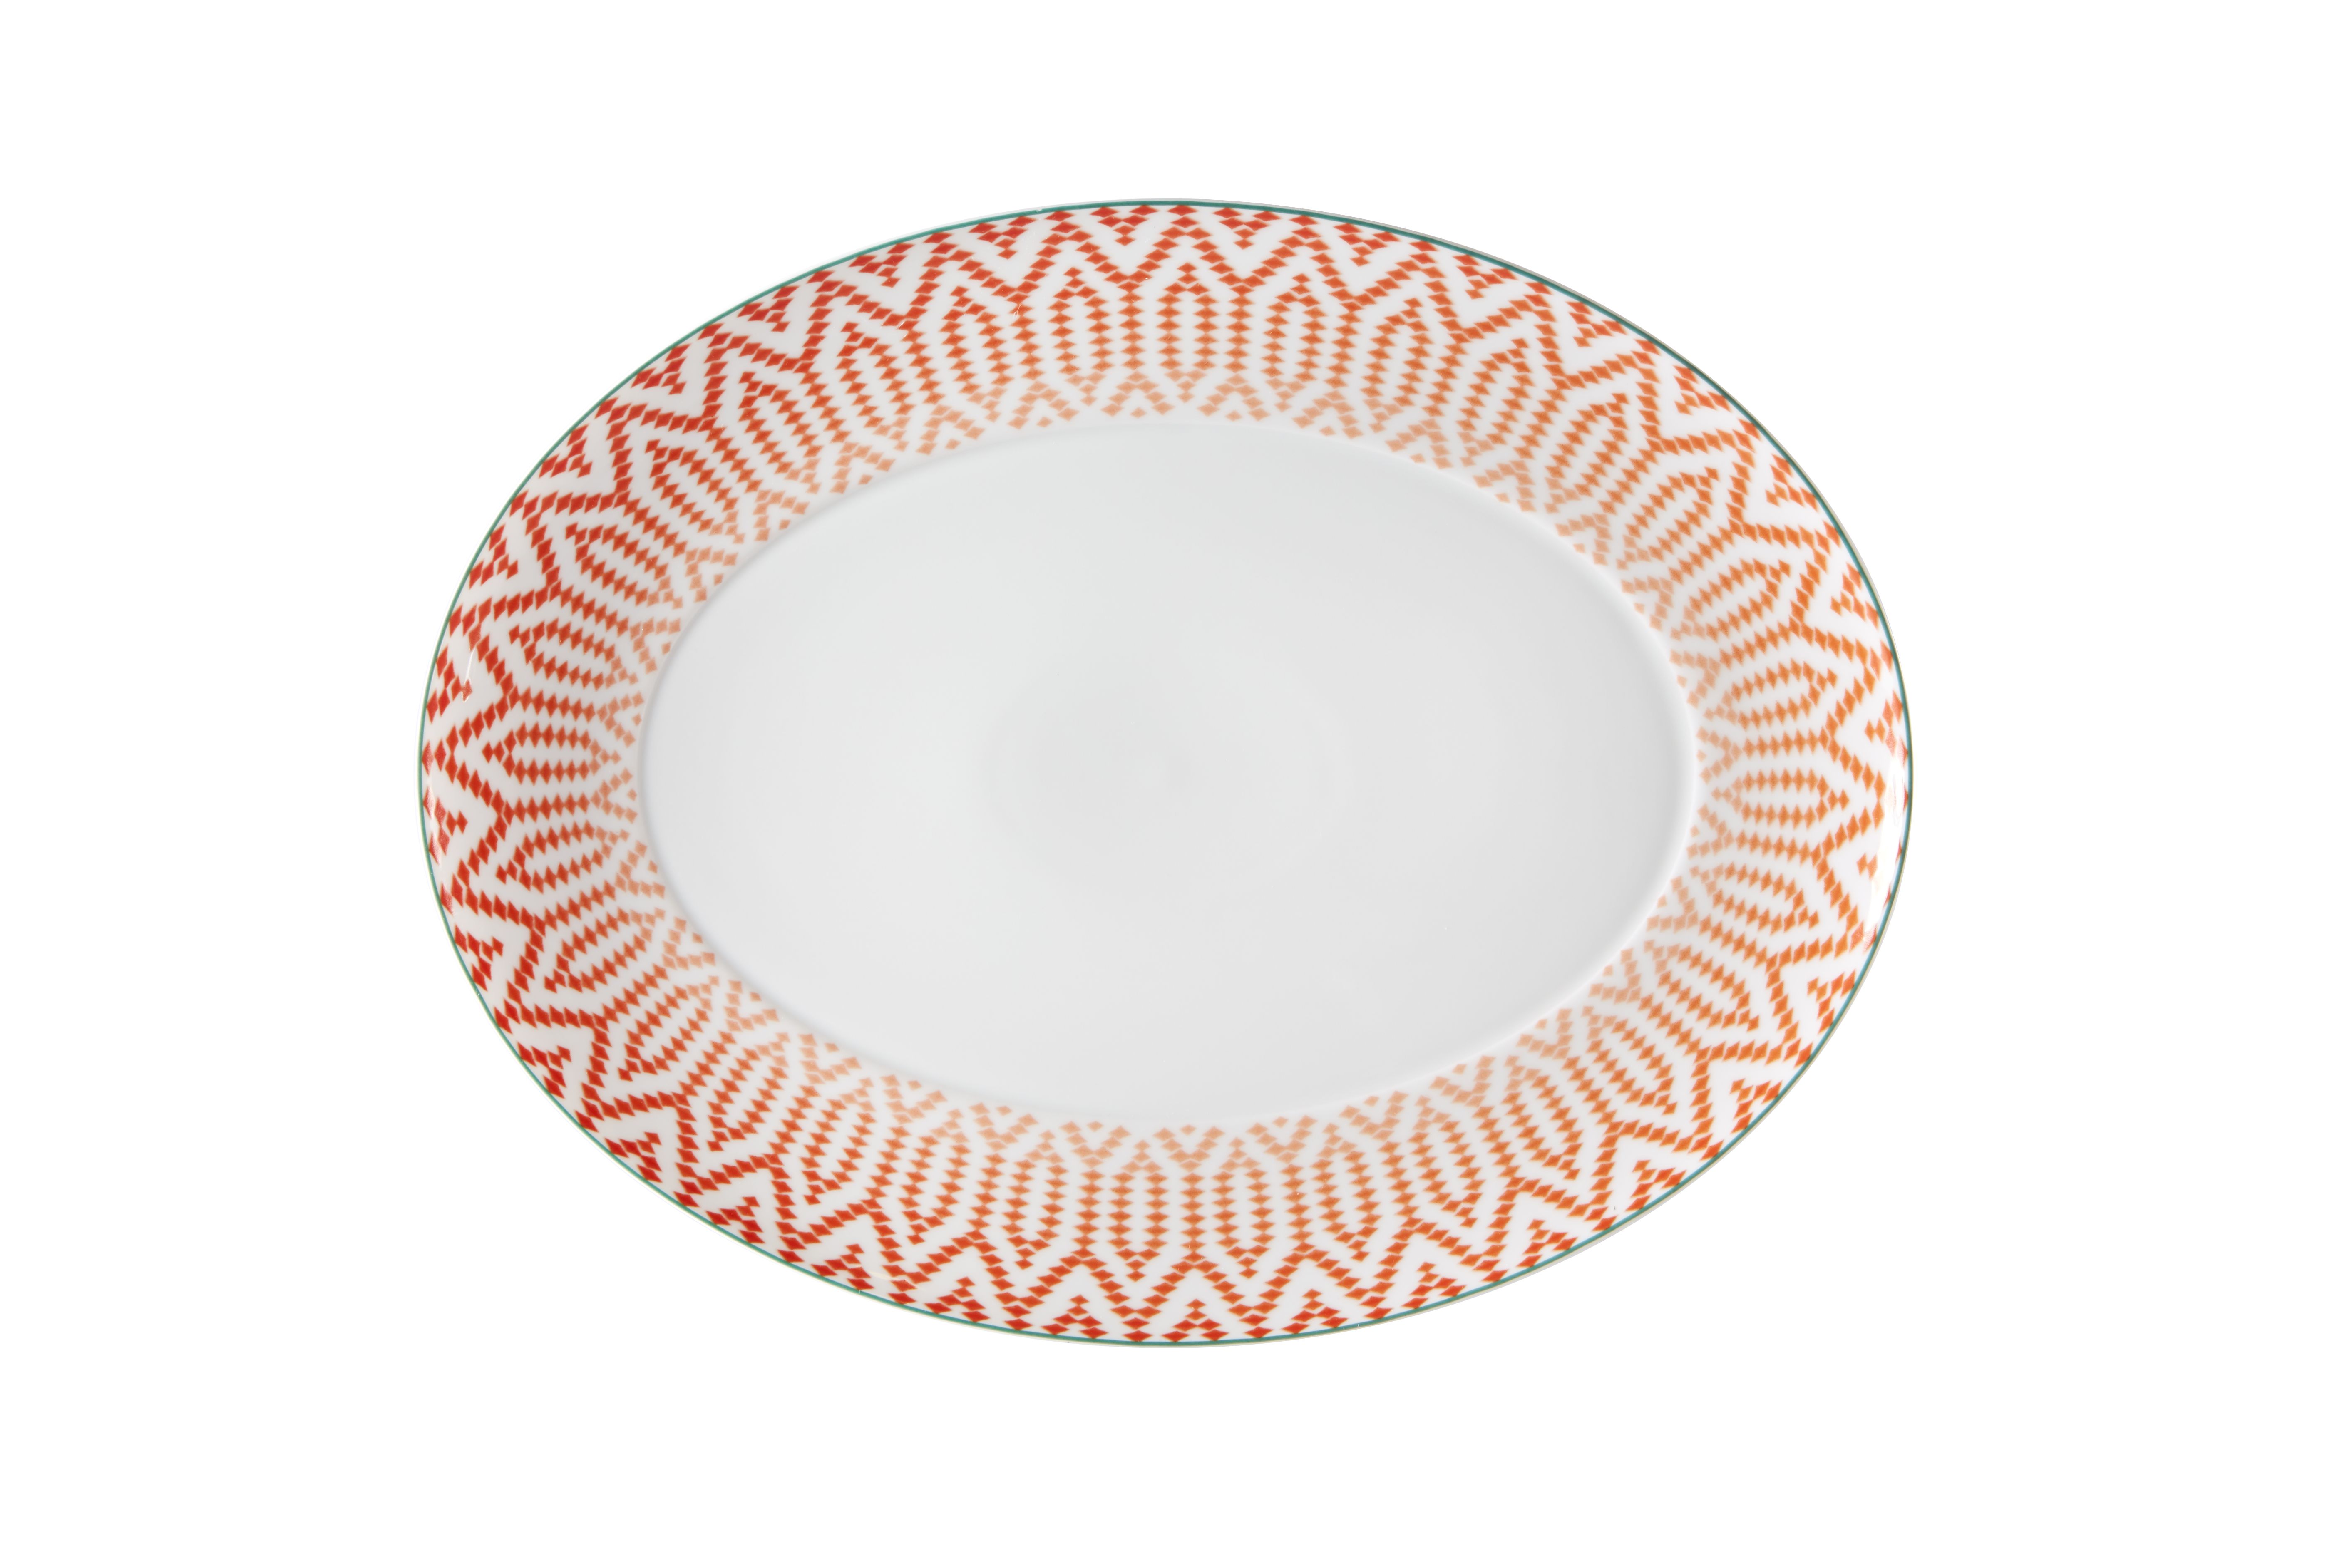 Oval Plate Medium Vista Alegre Collection Fiji